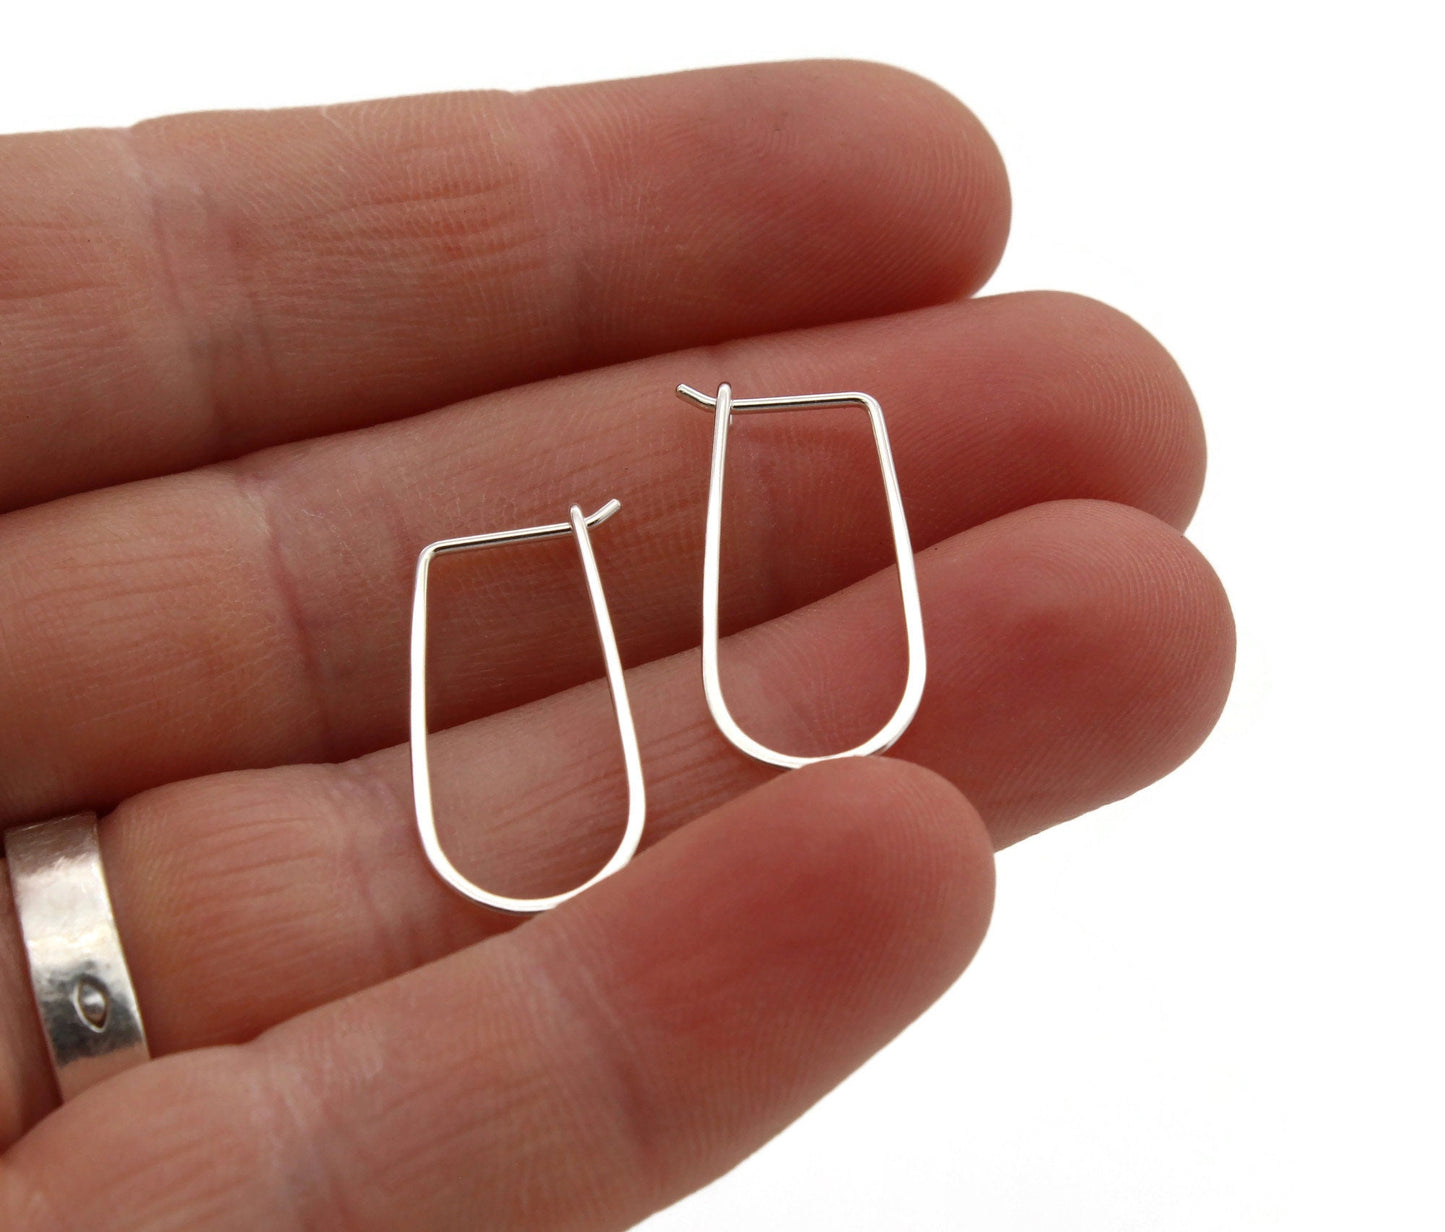 Small Sterling Silver Hoop Earrings